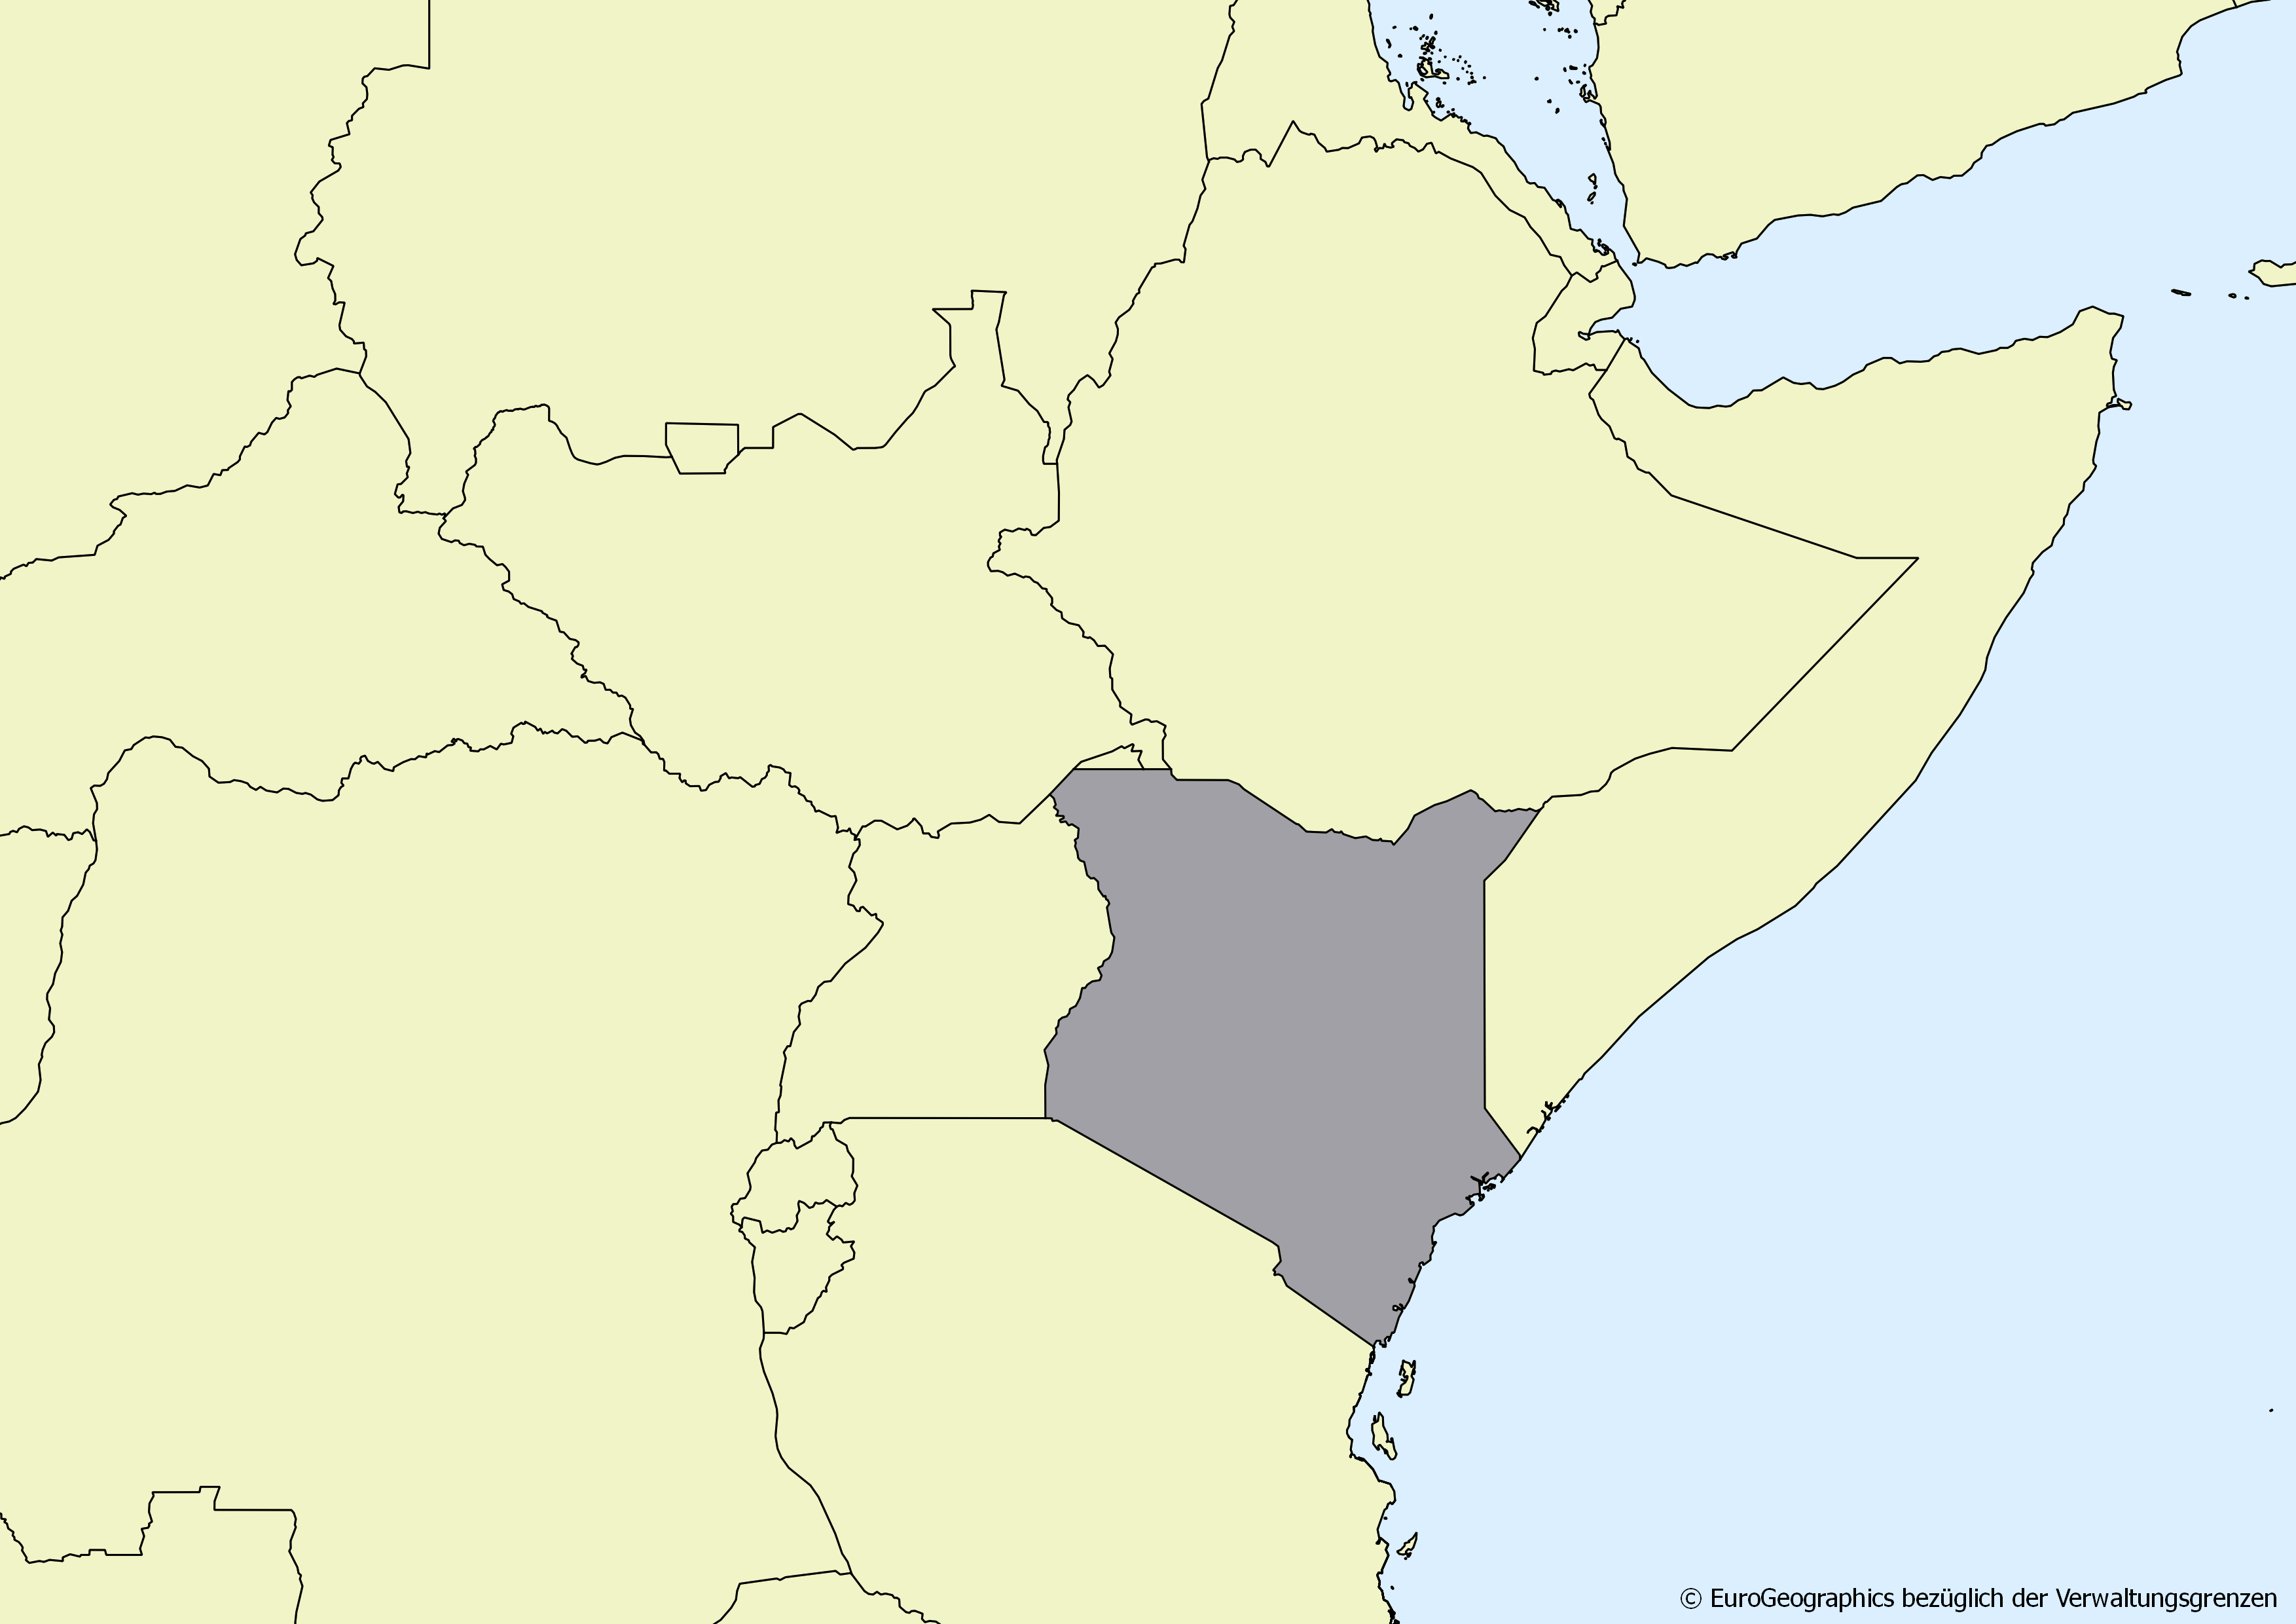 Ausschnitt einer Karte des afrikanischen Kontinents mit Ländergrenzen. Im Zentrum steht Kenia grau hervorgehoben